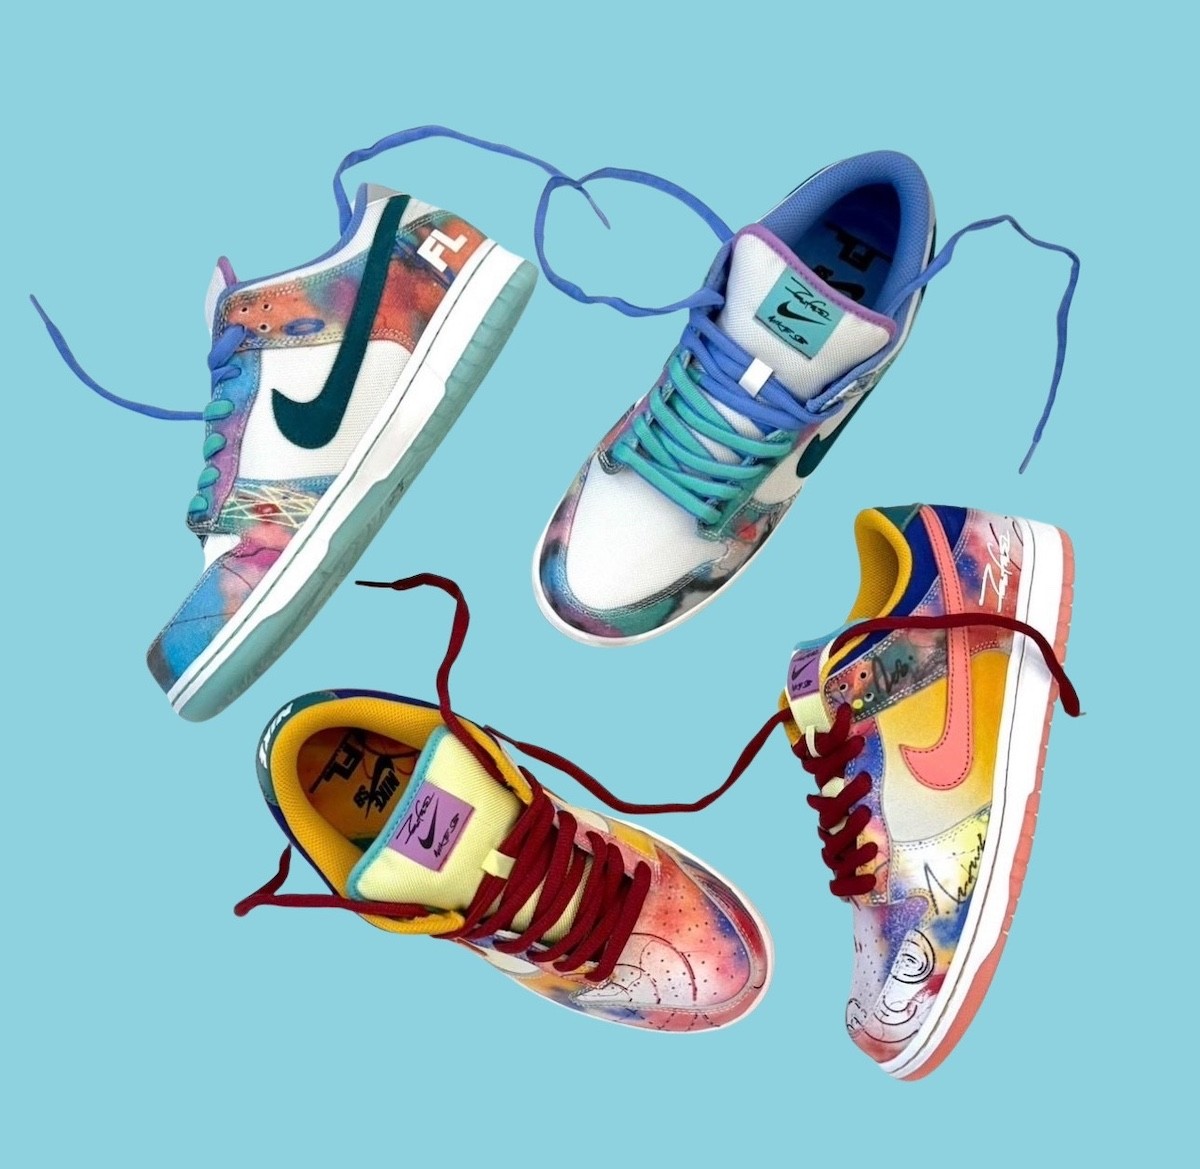 Futura x Nike SB Dunk Low Най-новият комплект от сътрудничеството ще бъде пуснат през май